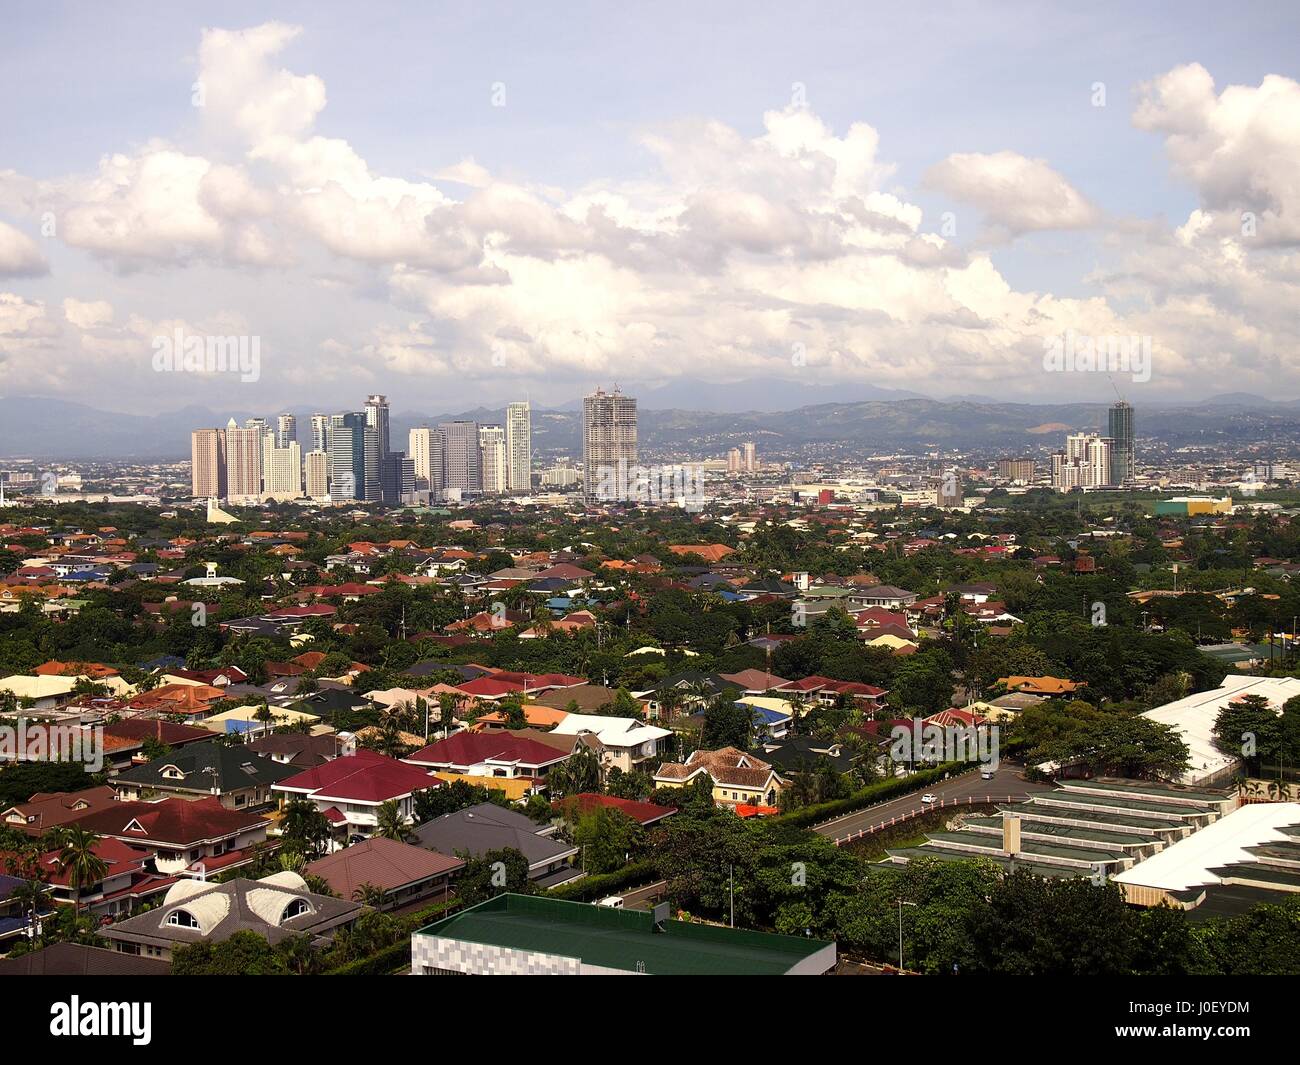 PASIG CITY, PHILIPPINES - 21 octobre 2016 : Une vue aérienne de zones commerciales et résidentielles. Banque D'Images